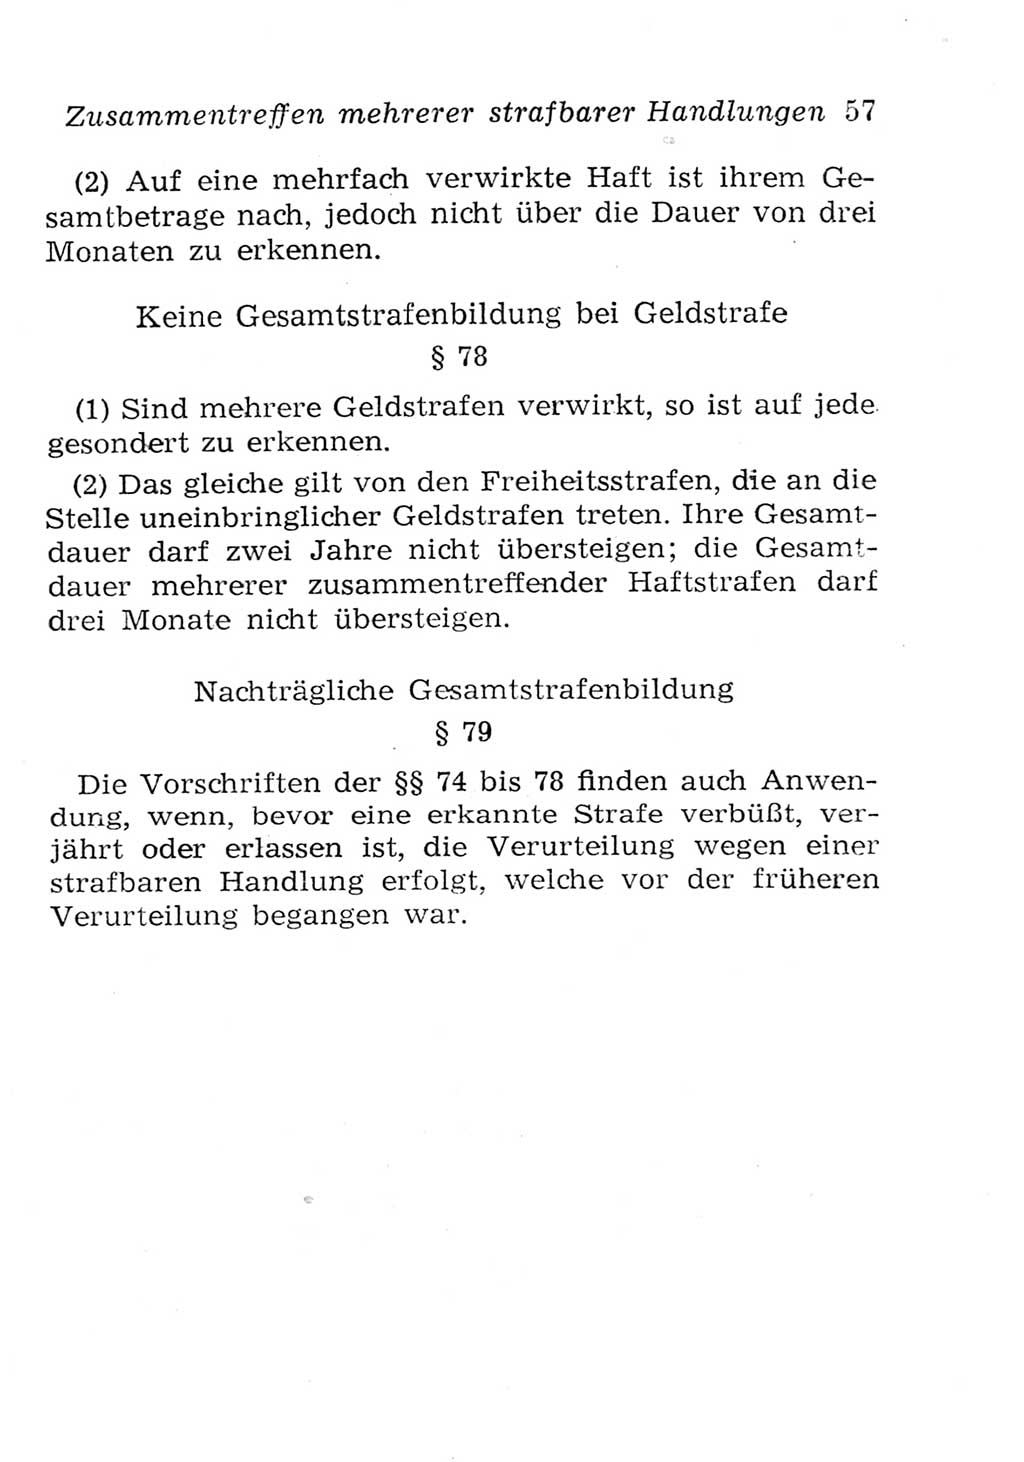 Strafgesetzbuch (StGB) und andere Strafgesetze [Deutsche Demokratische Republik (DDR)] 1957, Seite 57 (StGB Strafges. DDR 1957, S. 57)